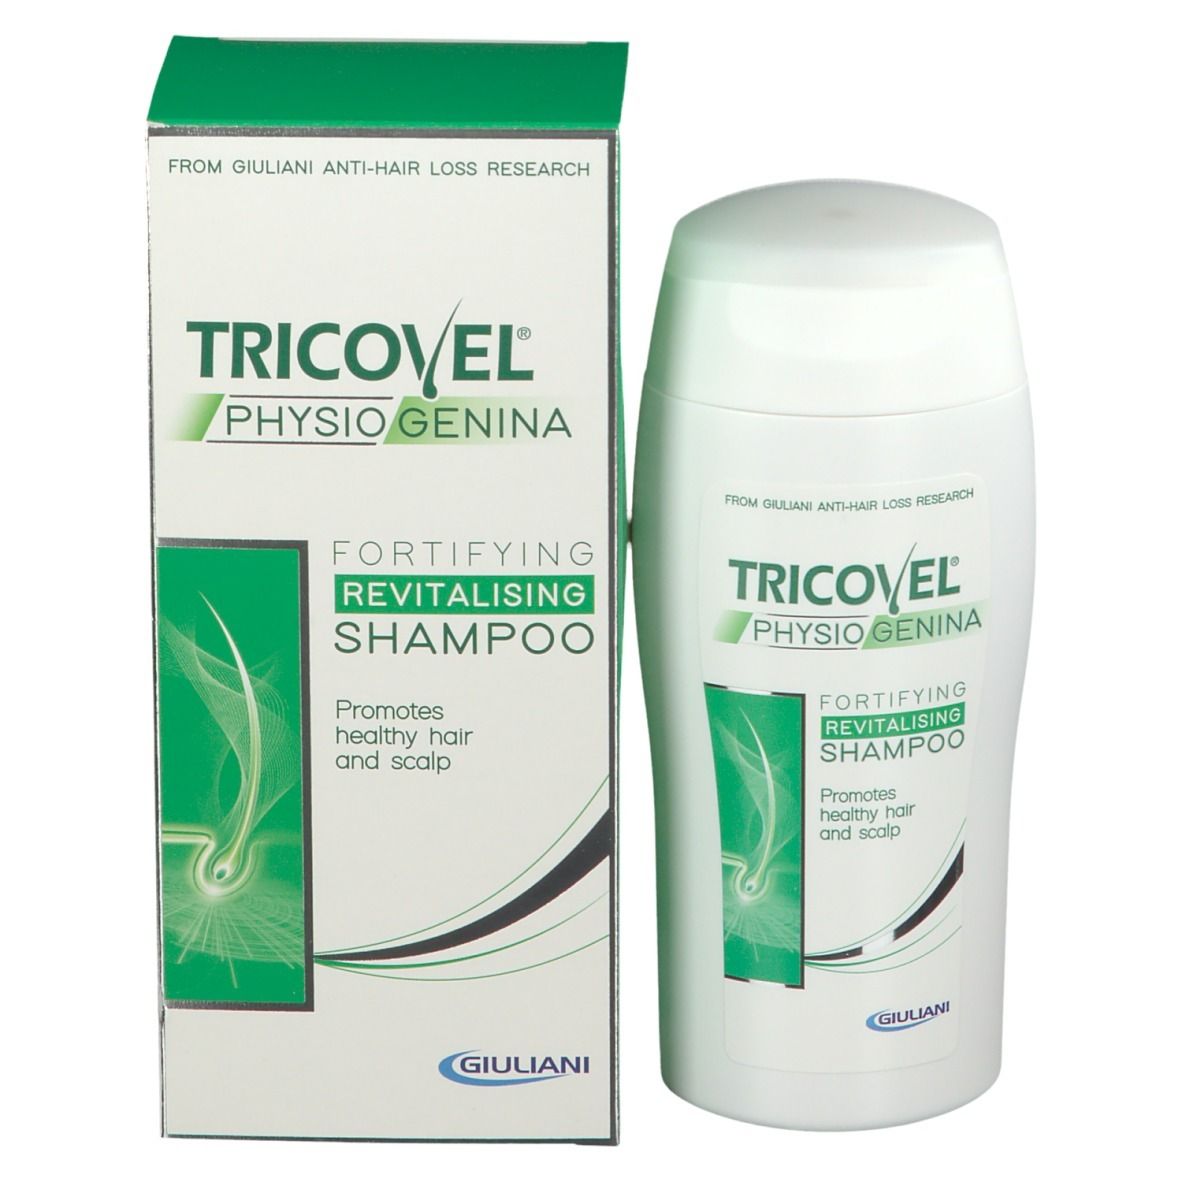 TRICOVEL® PhysioGenina Shampoo